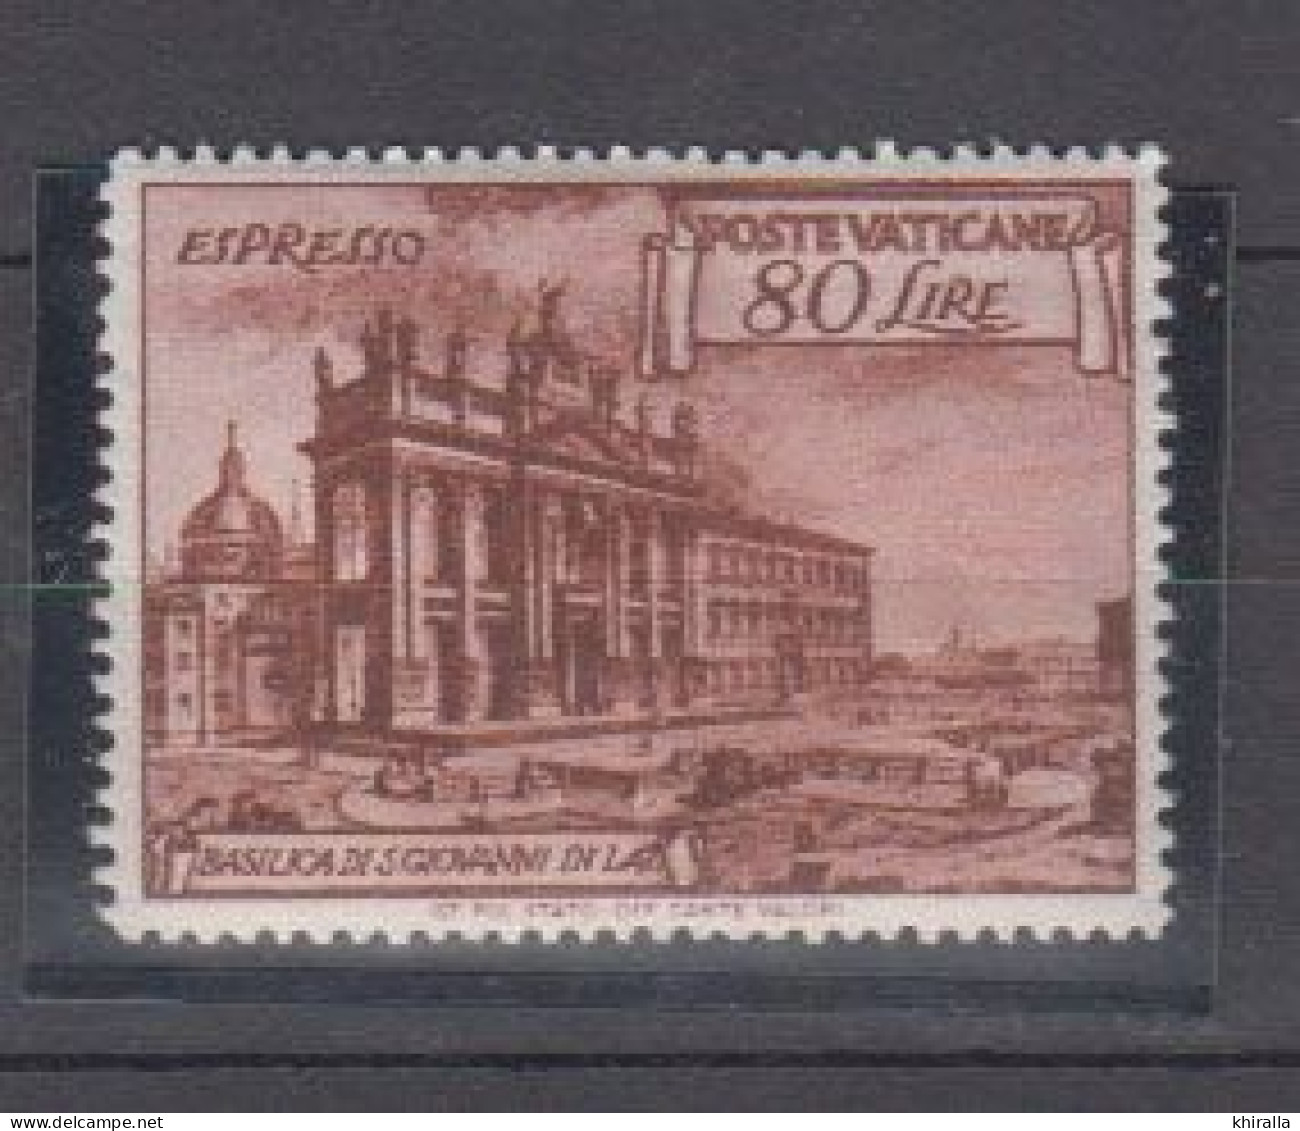 VATICAN    1949    Exprés  N°  11   ( Neufs Sans Charniére )   COTE  55 € 00       ( D 88 ) - Eilsendung (Eilpost)